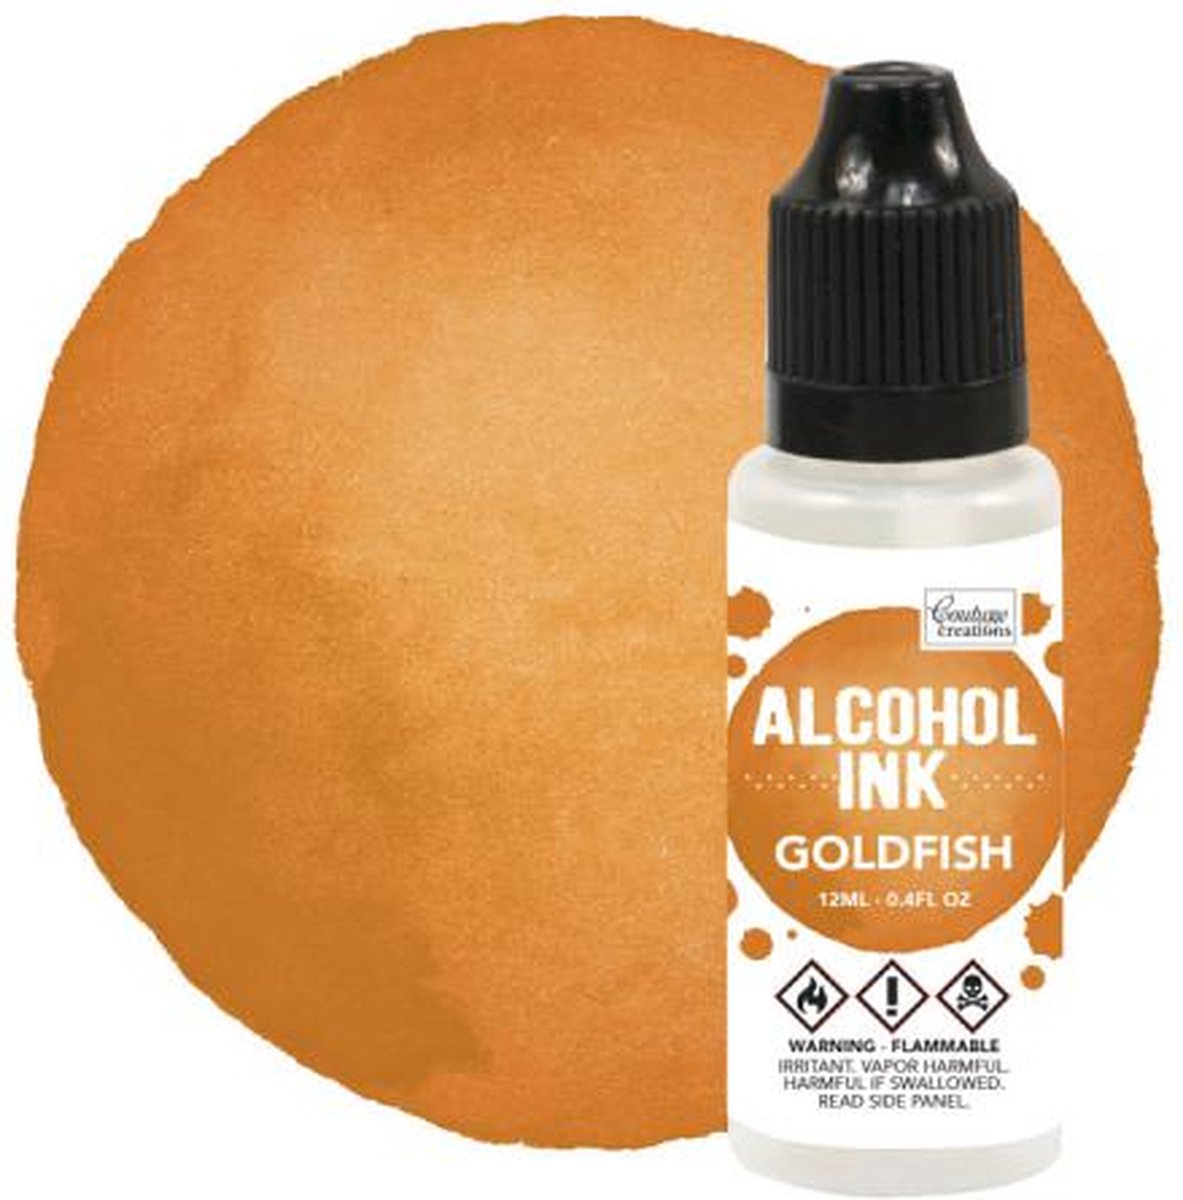 Alcohol Ink Sunset Orange / Goldfish (12mL | 0.4fl oz)